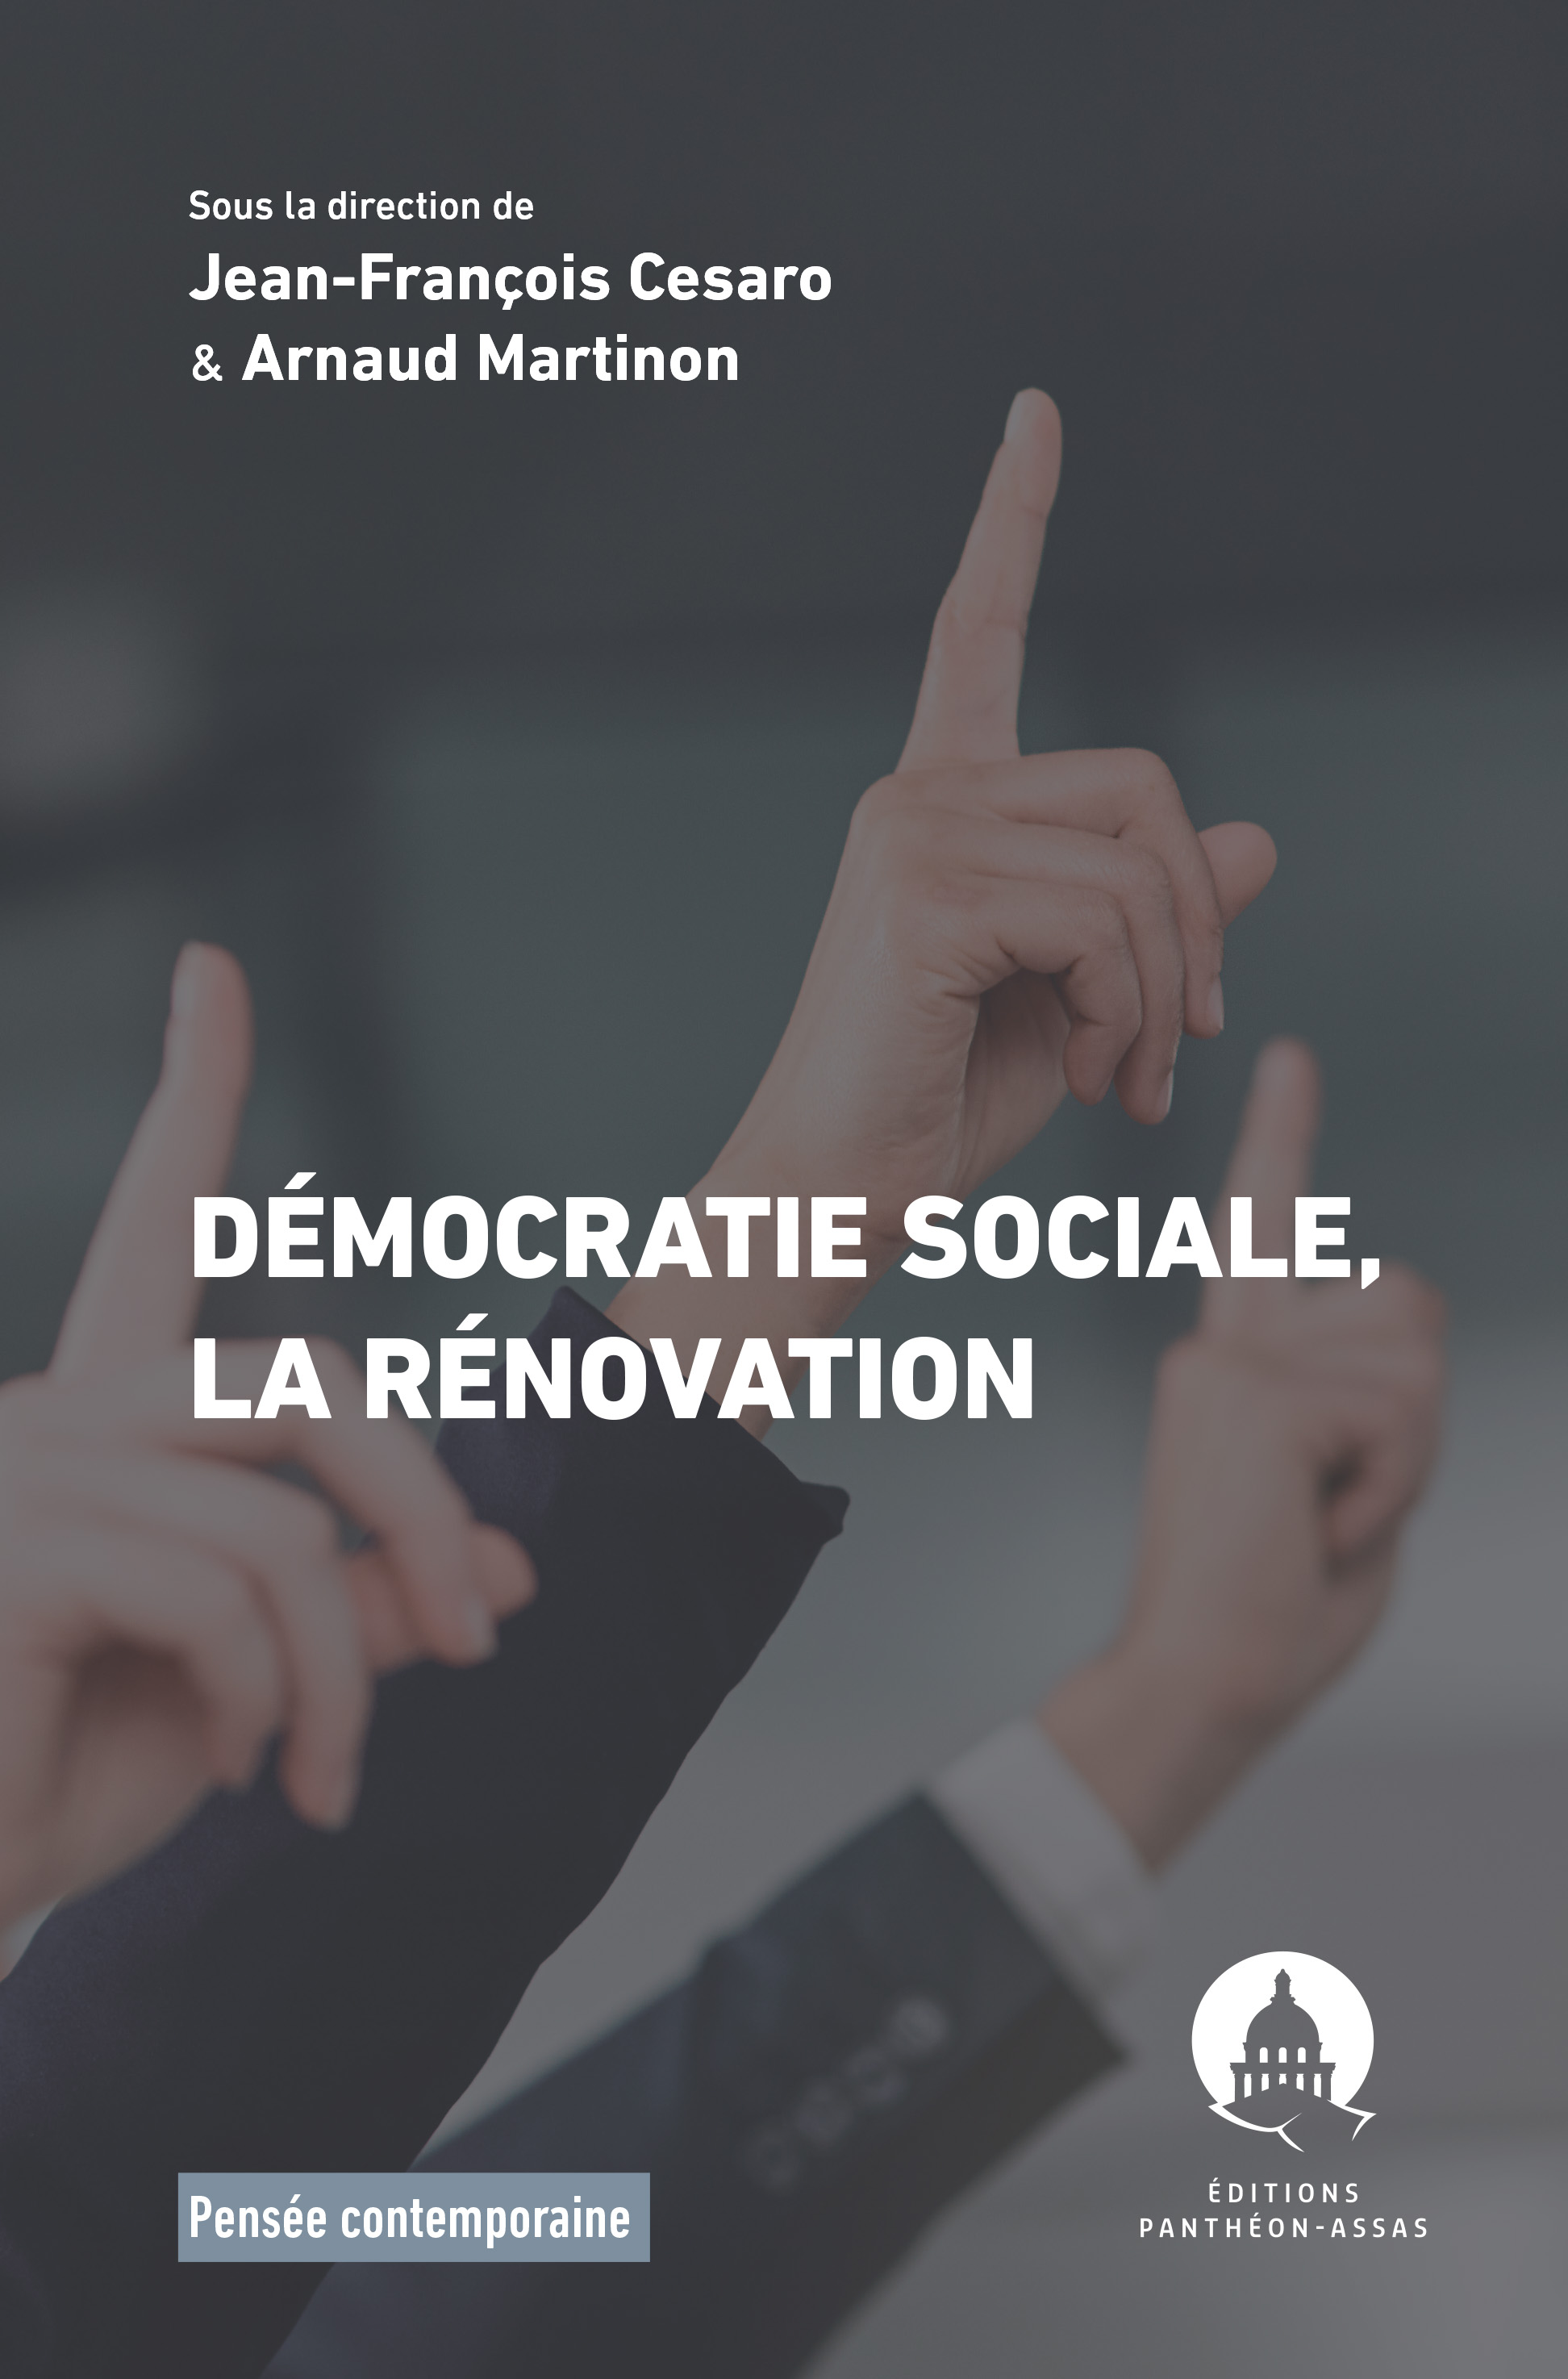 Couverture de l'ouvrage Démocratie sociale, la rénovation, dirigé par les professeurs Jean-François Cesaro et Arnaud Martinon